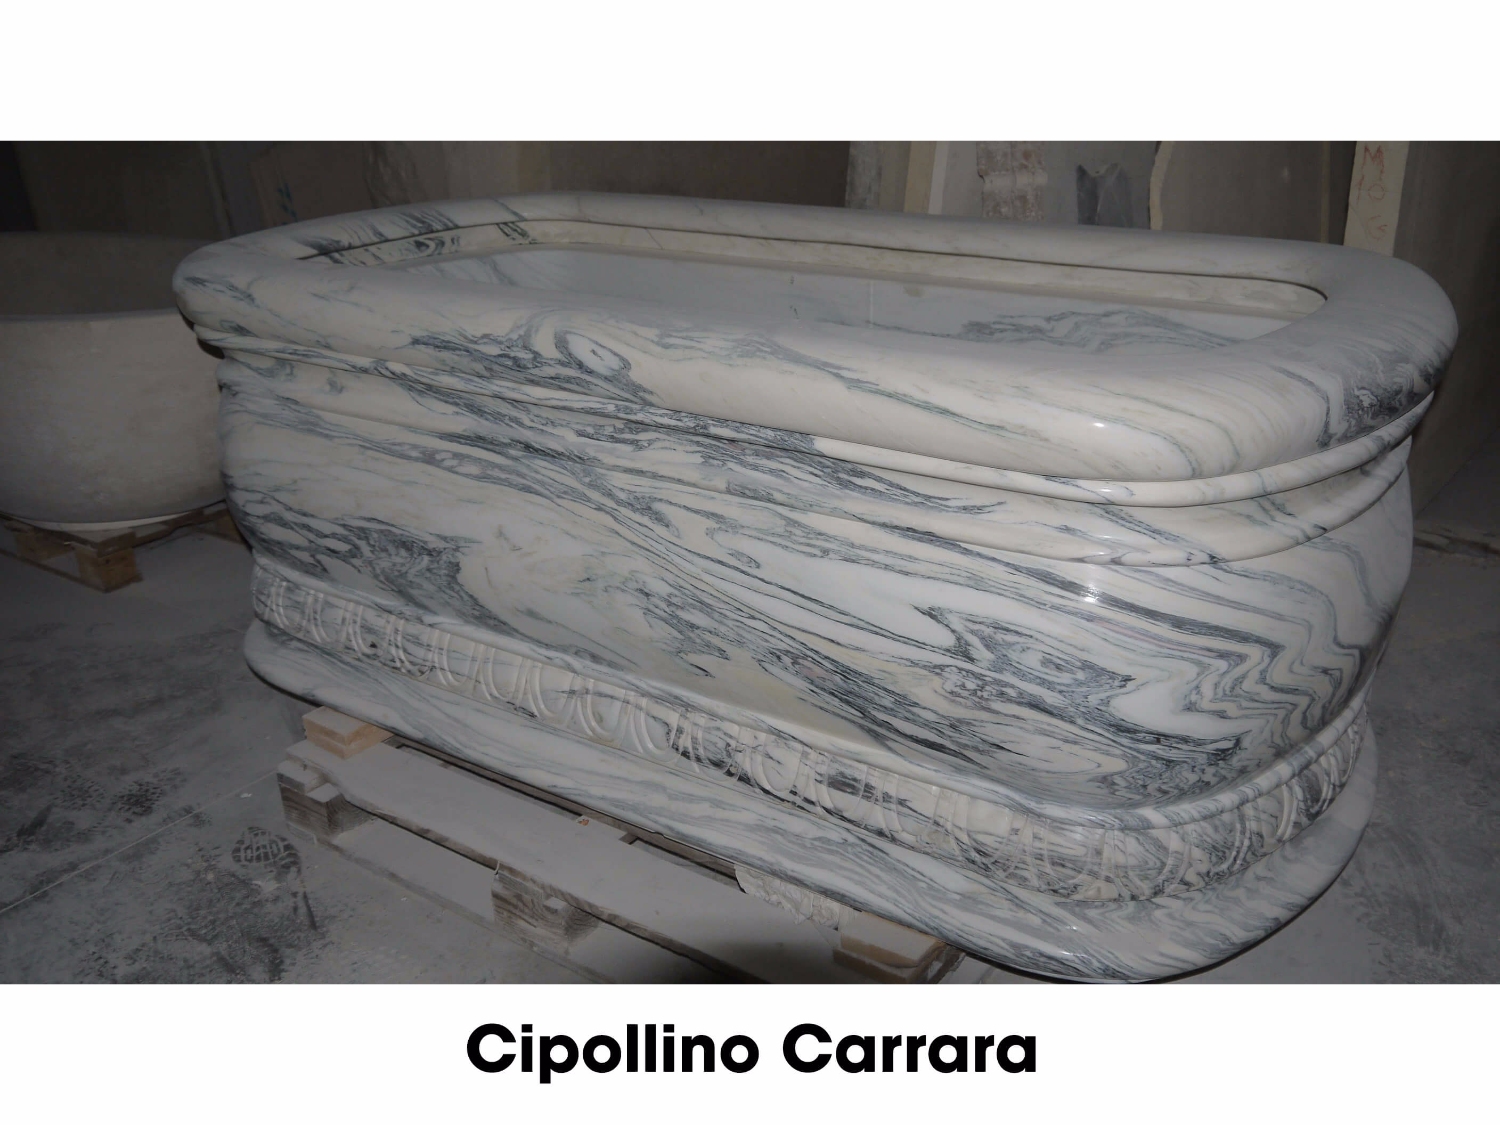 Cipollino Carrara